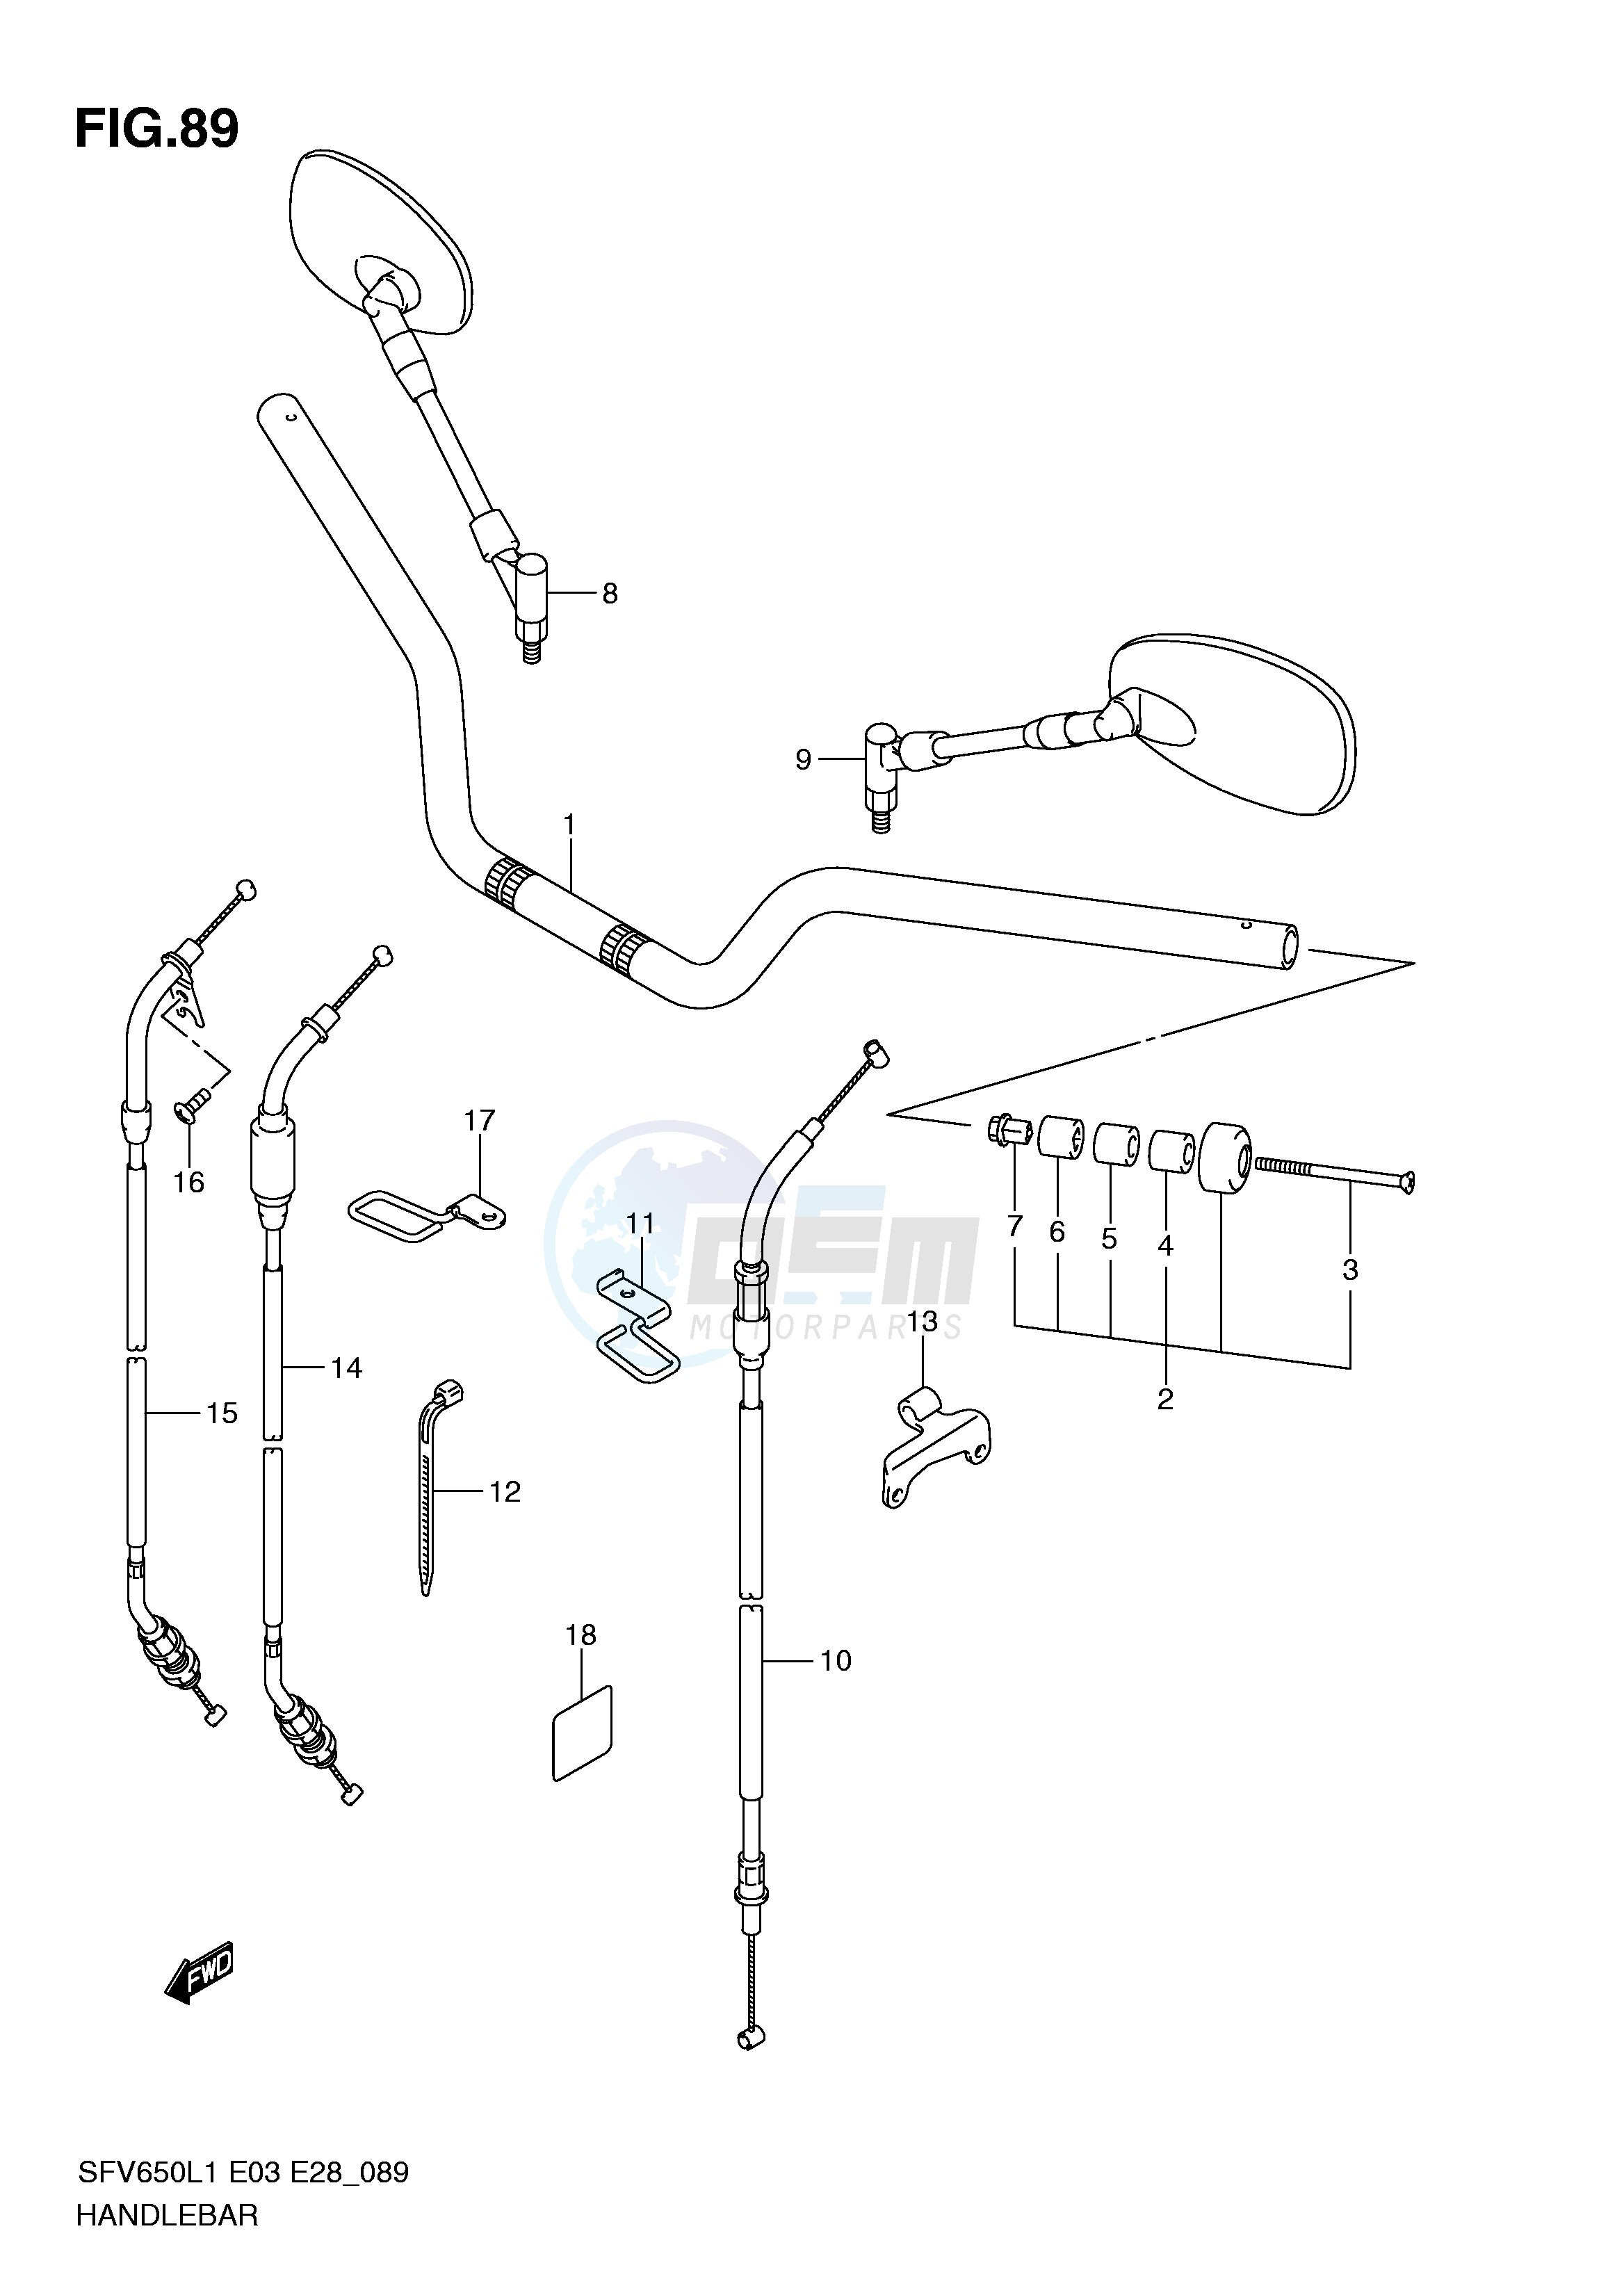 HANDLEBAR (SFV650AL1 E28) blueprint